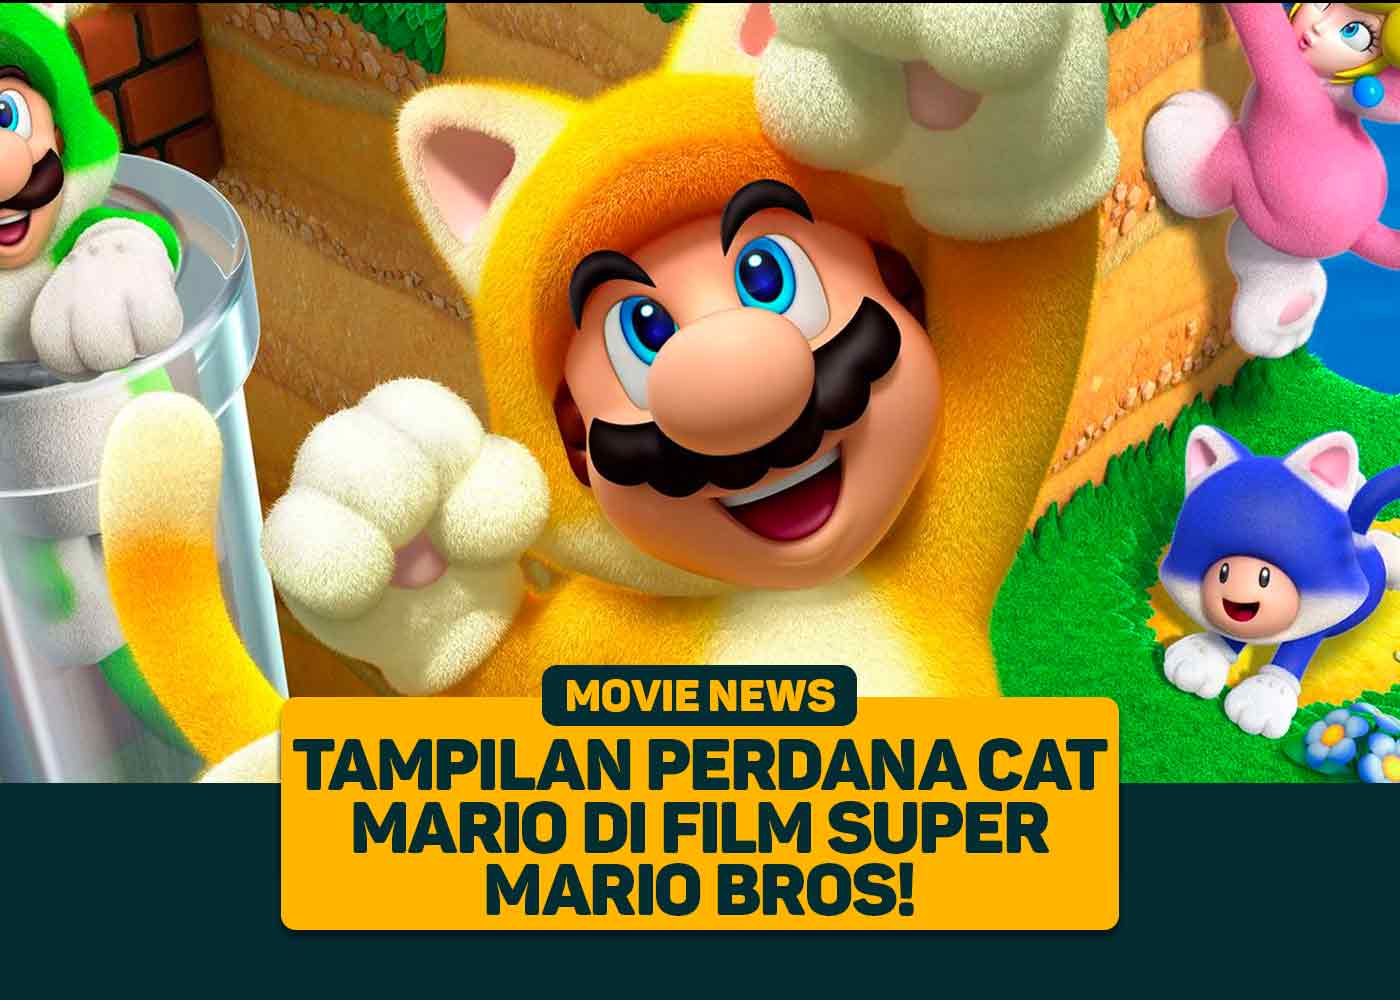 Tampilan Perdana Cat Mario di Film Super Mario Bros!